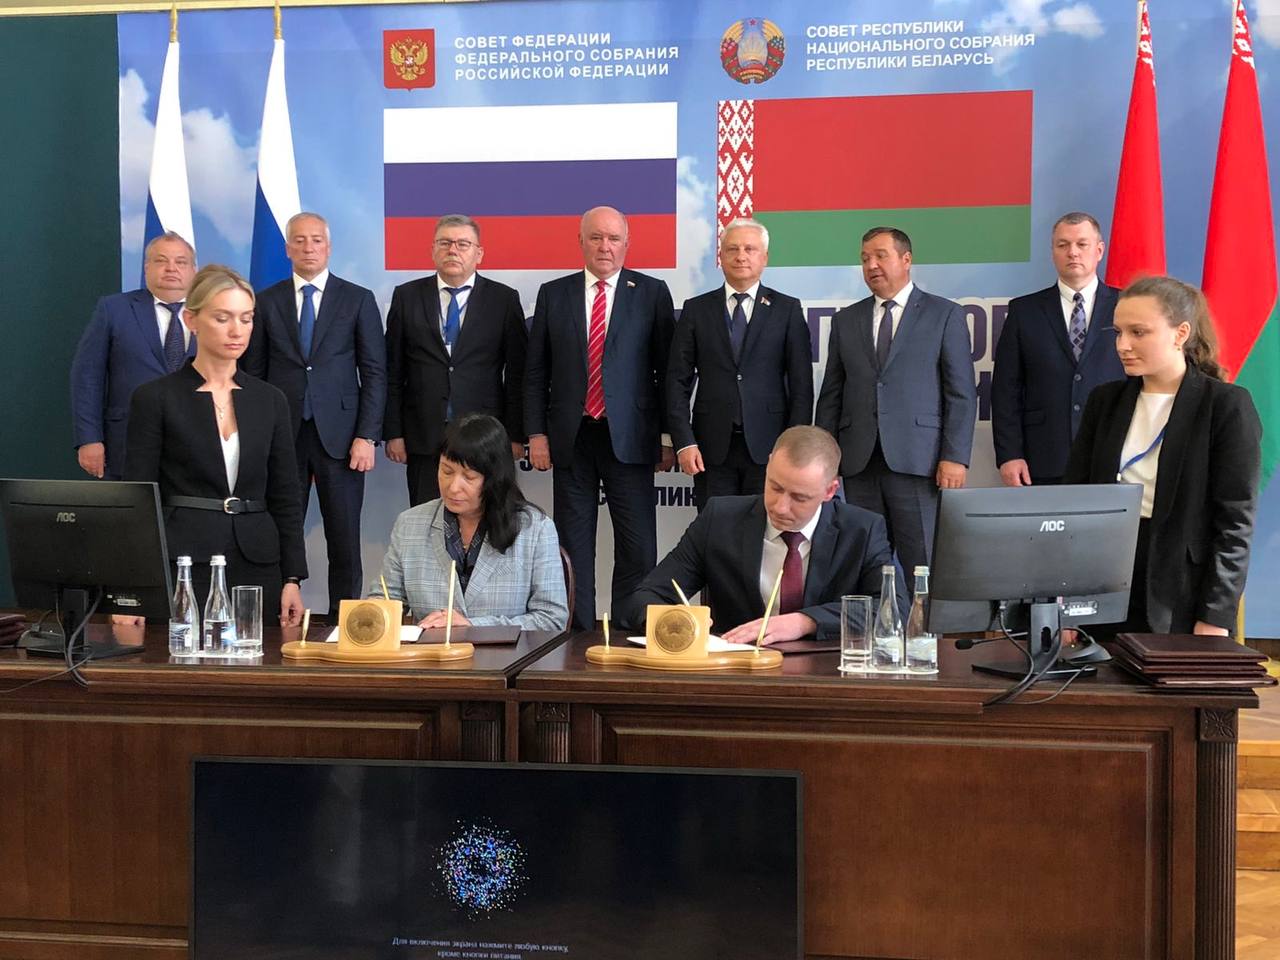 Зеленая дипломатия в действии. Россия и Беларусь развивают природоохранное сотрудничество